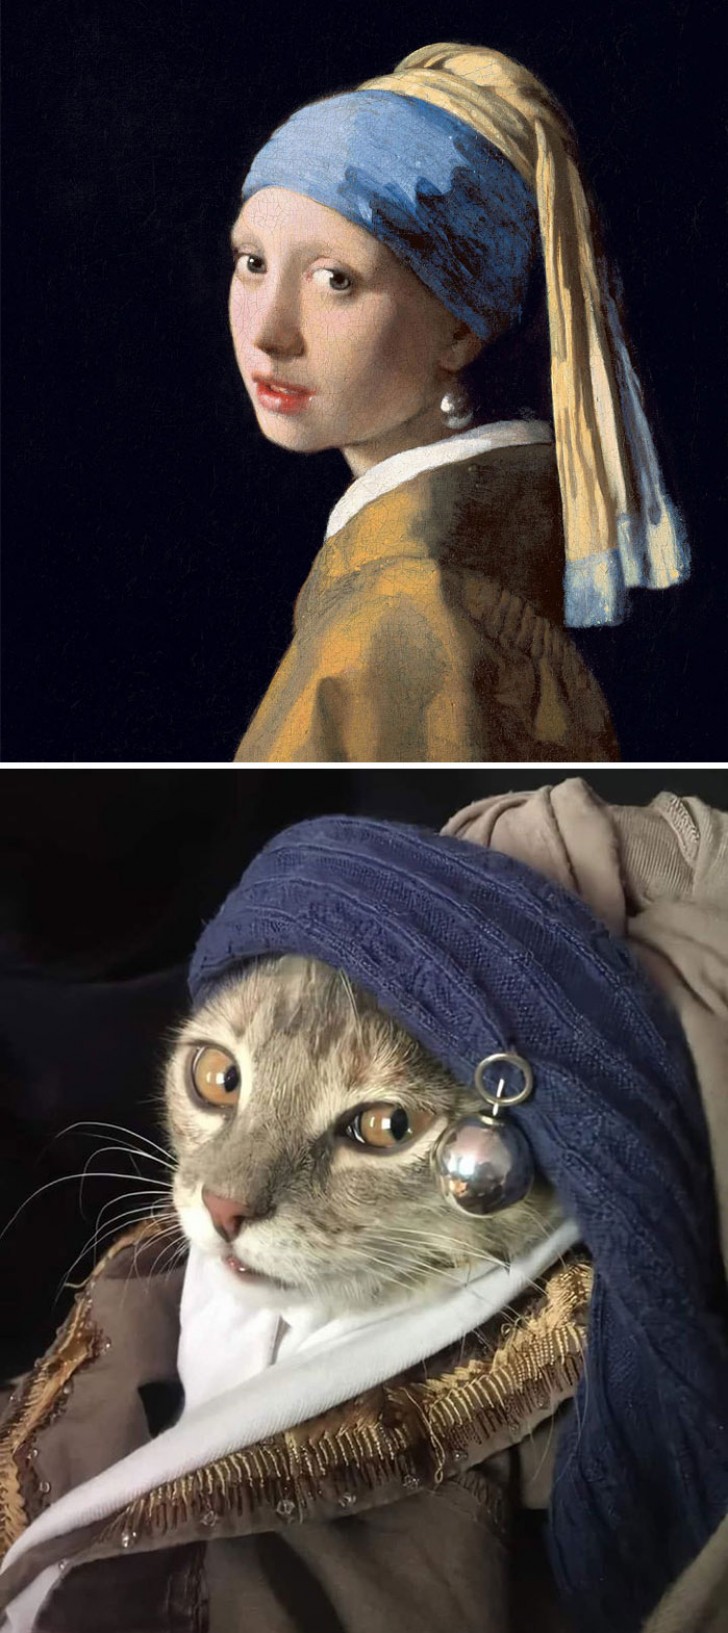 Und "Das Mädchen mit dem Perlenohrring" passt gut zu der katzenhaften Schönheit dieser sehr ... fotogenen Katze!